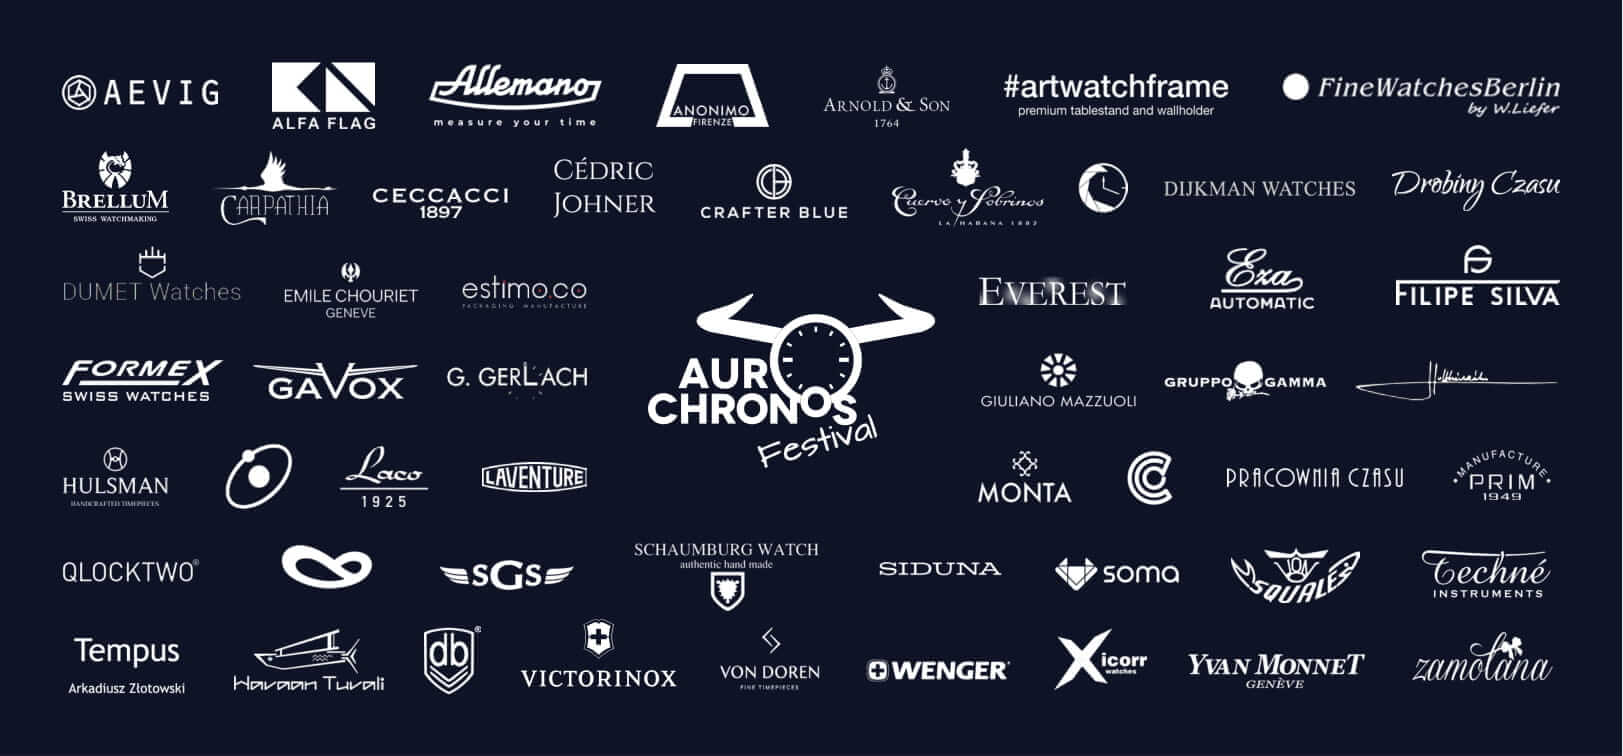 Przedstawiamy wystawców festiwalu AuroChronos 2019! Część 1